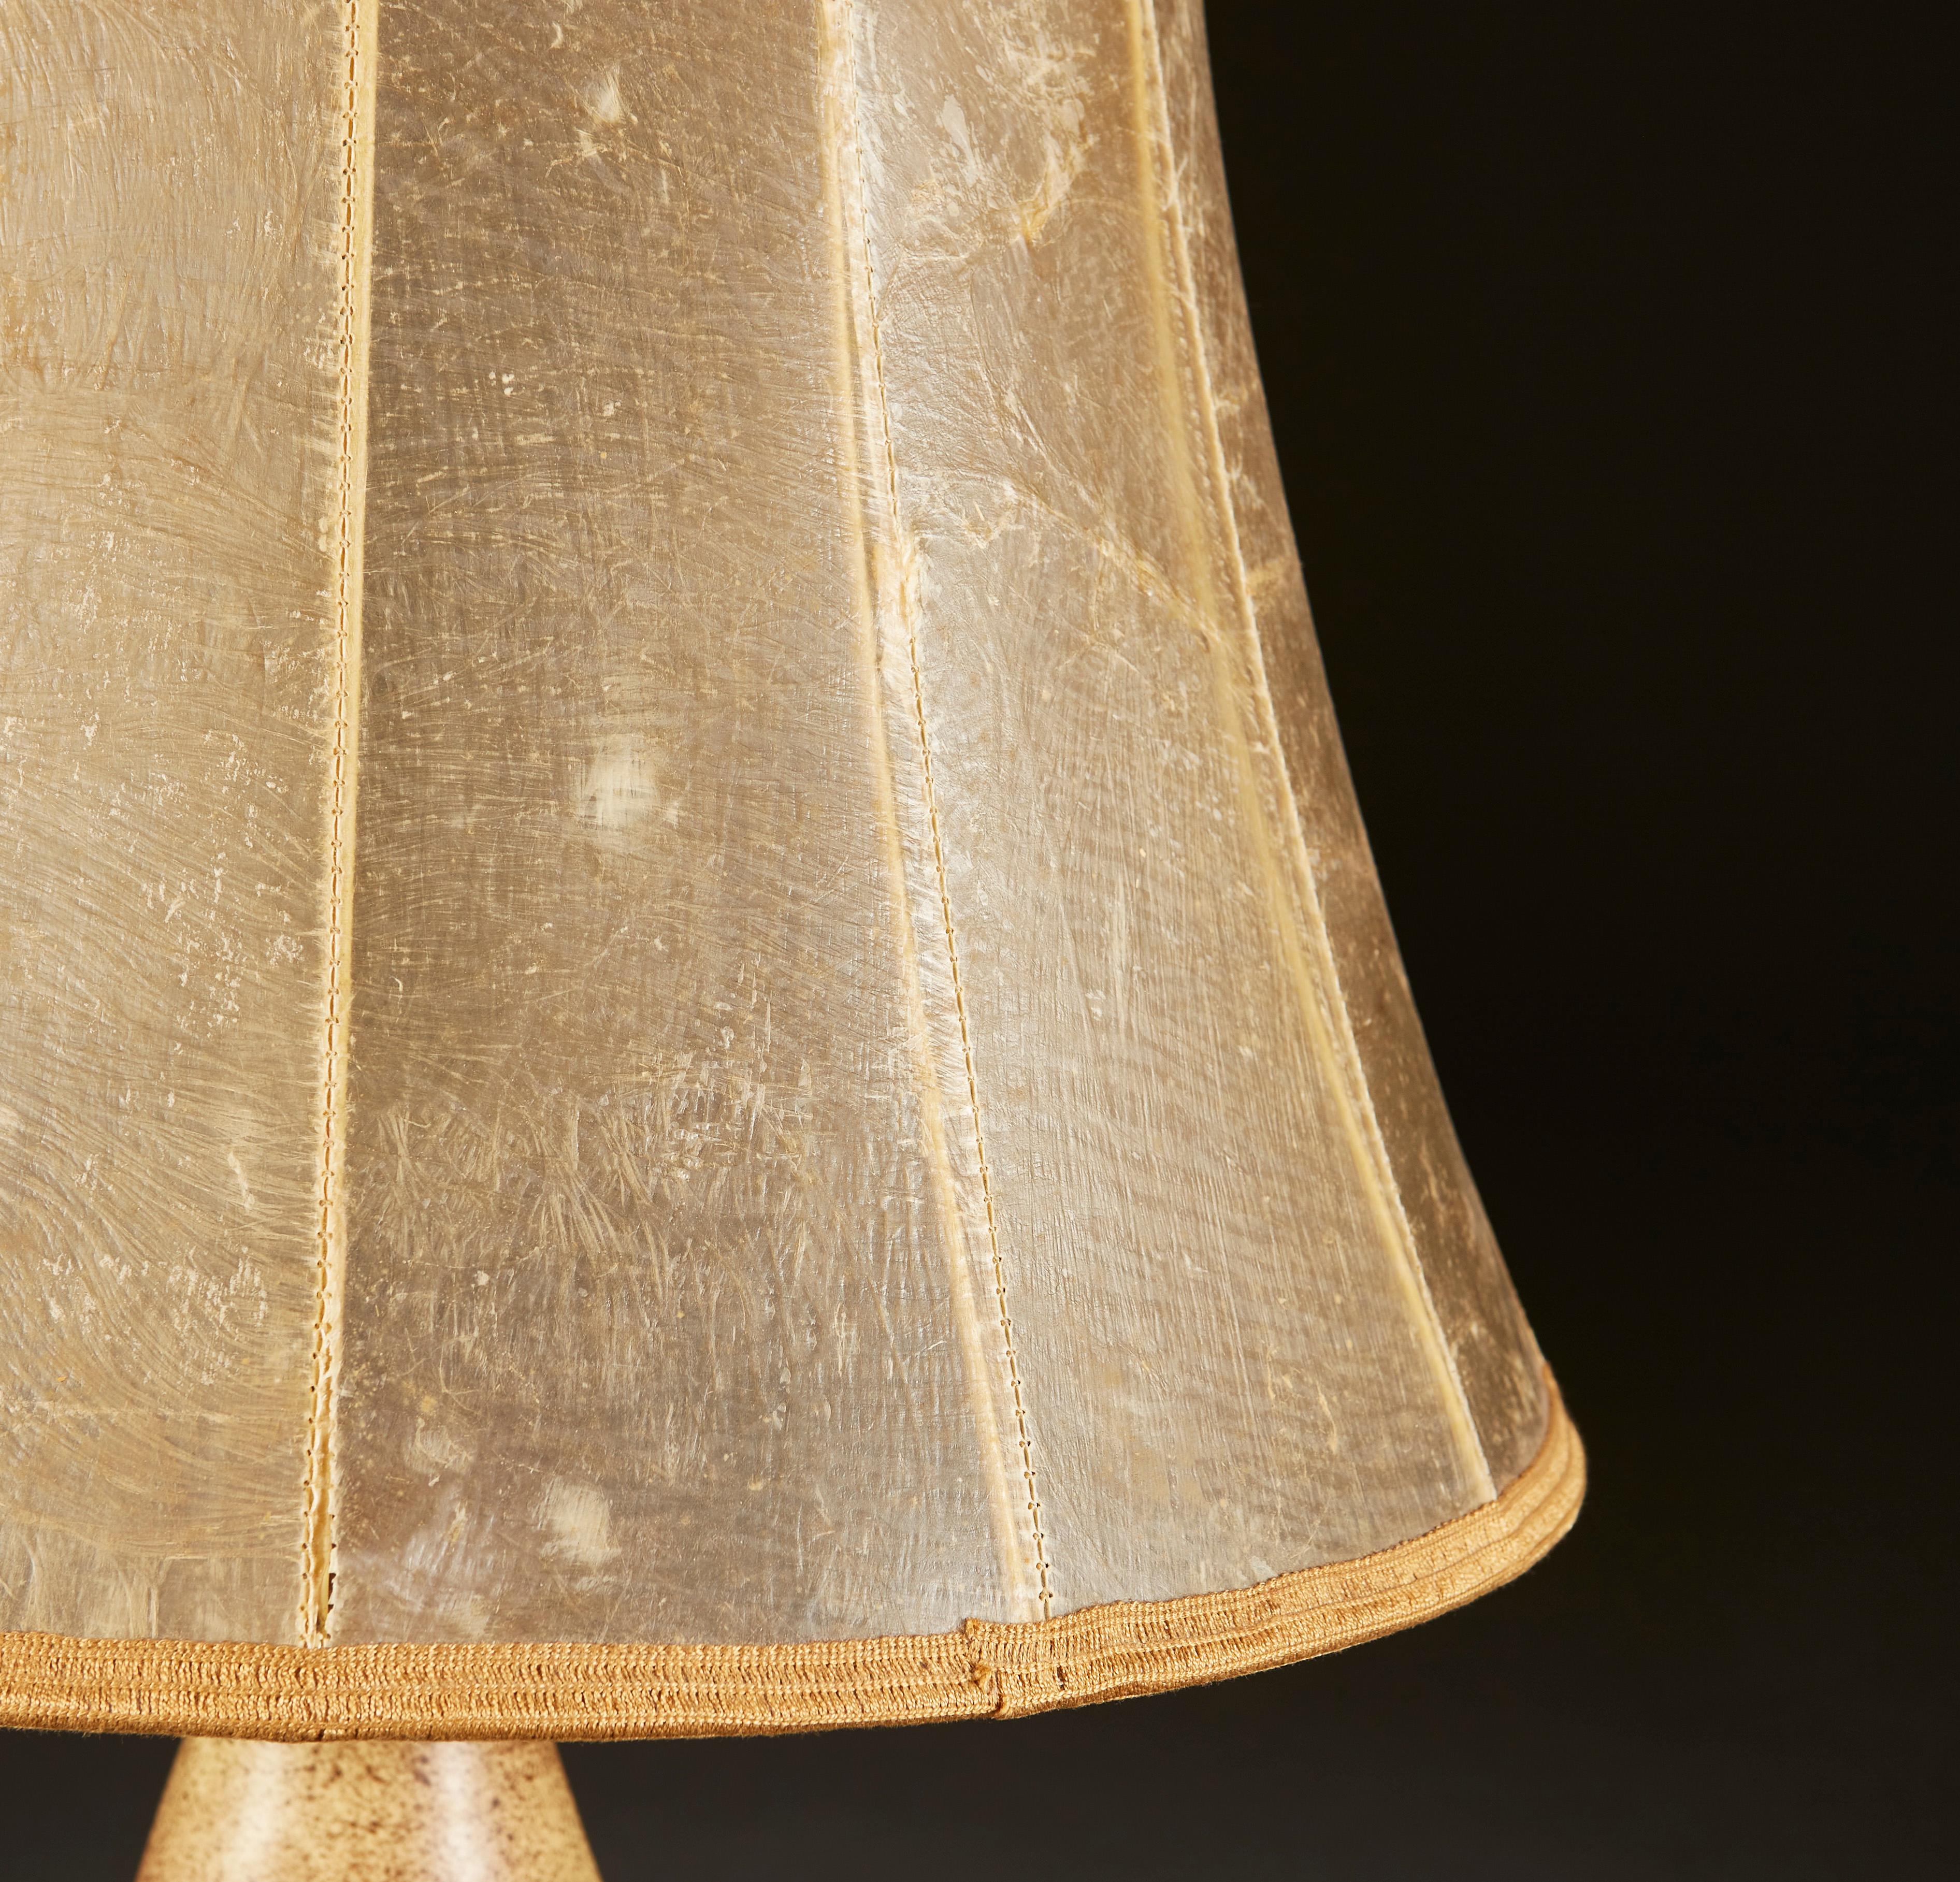 Une lampe de table inhabituelle en poterie d'art du milieu du vingtième siècle, à glaçure salée, avec six petits bras sur le corps. La lampe porte une signature à la base. 

La lampe est accompagnée d'un abat-jour en parchemin antique. 

La